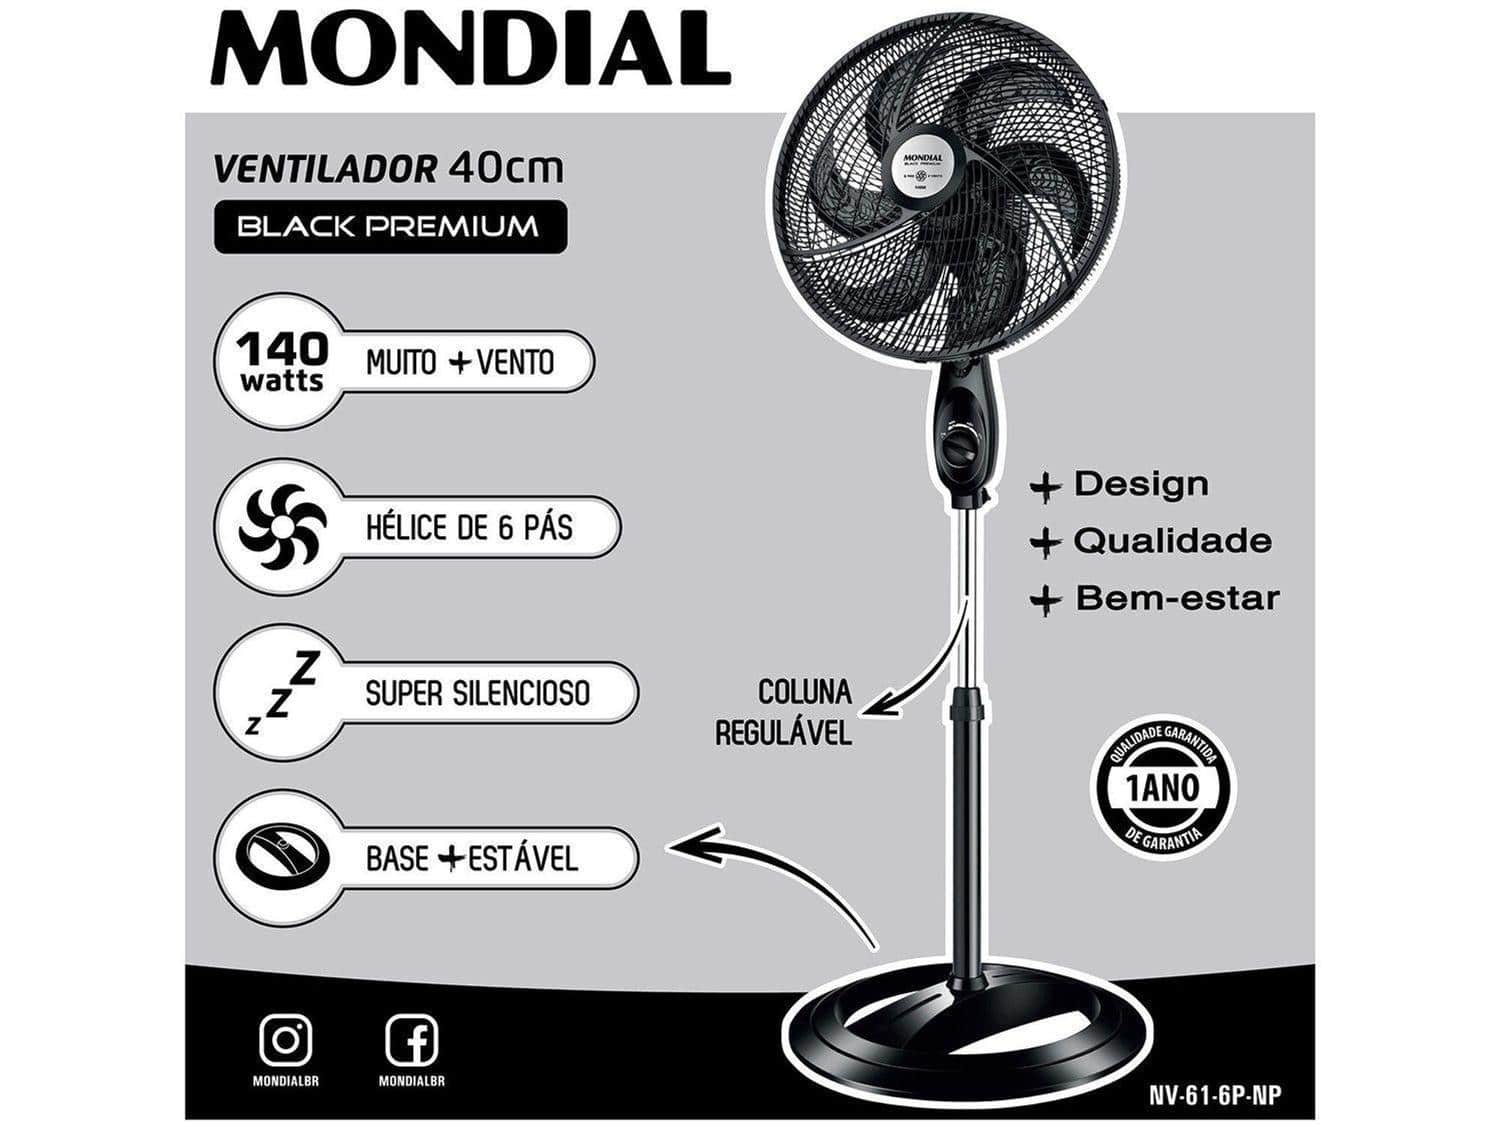 Ventilador Mondial Maxi Power é bom? Modelos com 40 ou 30 cm [Resenha Completa]